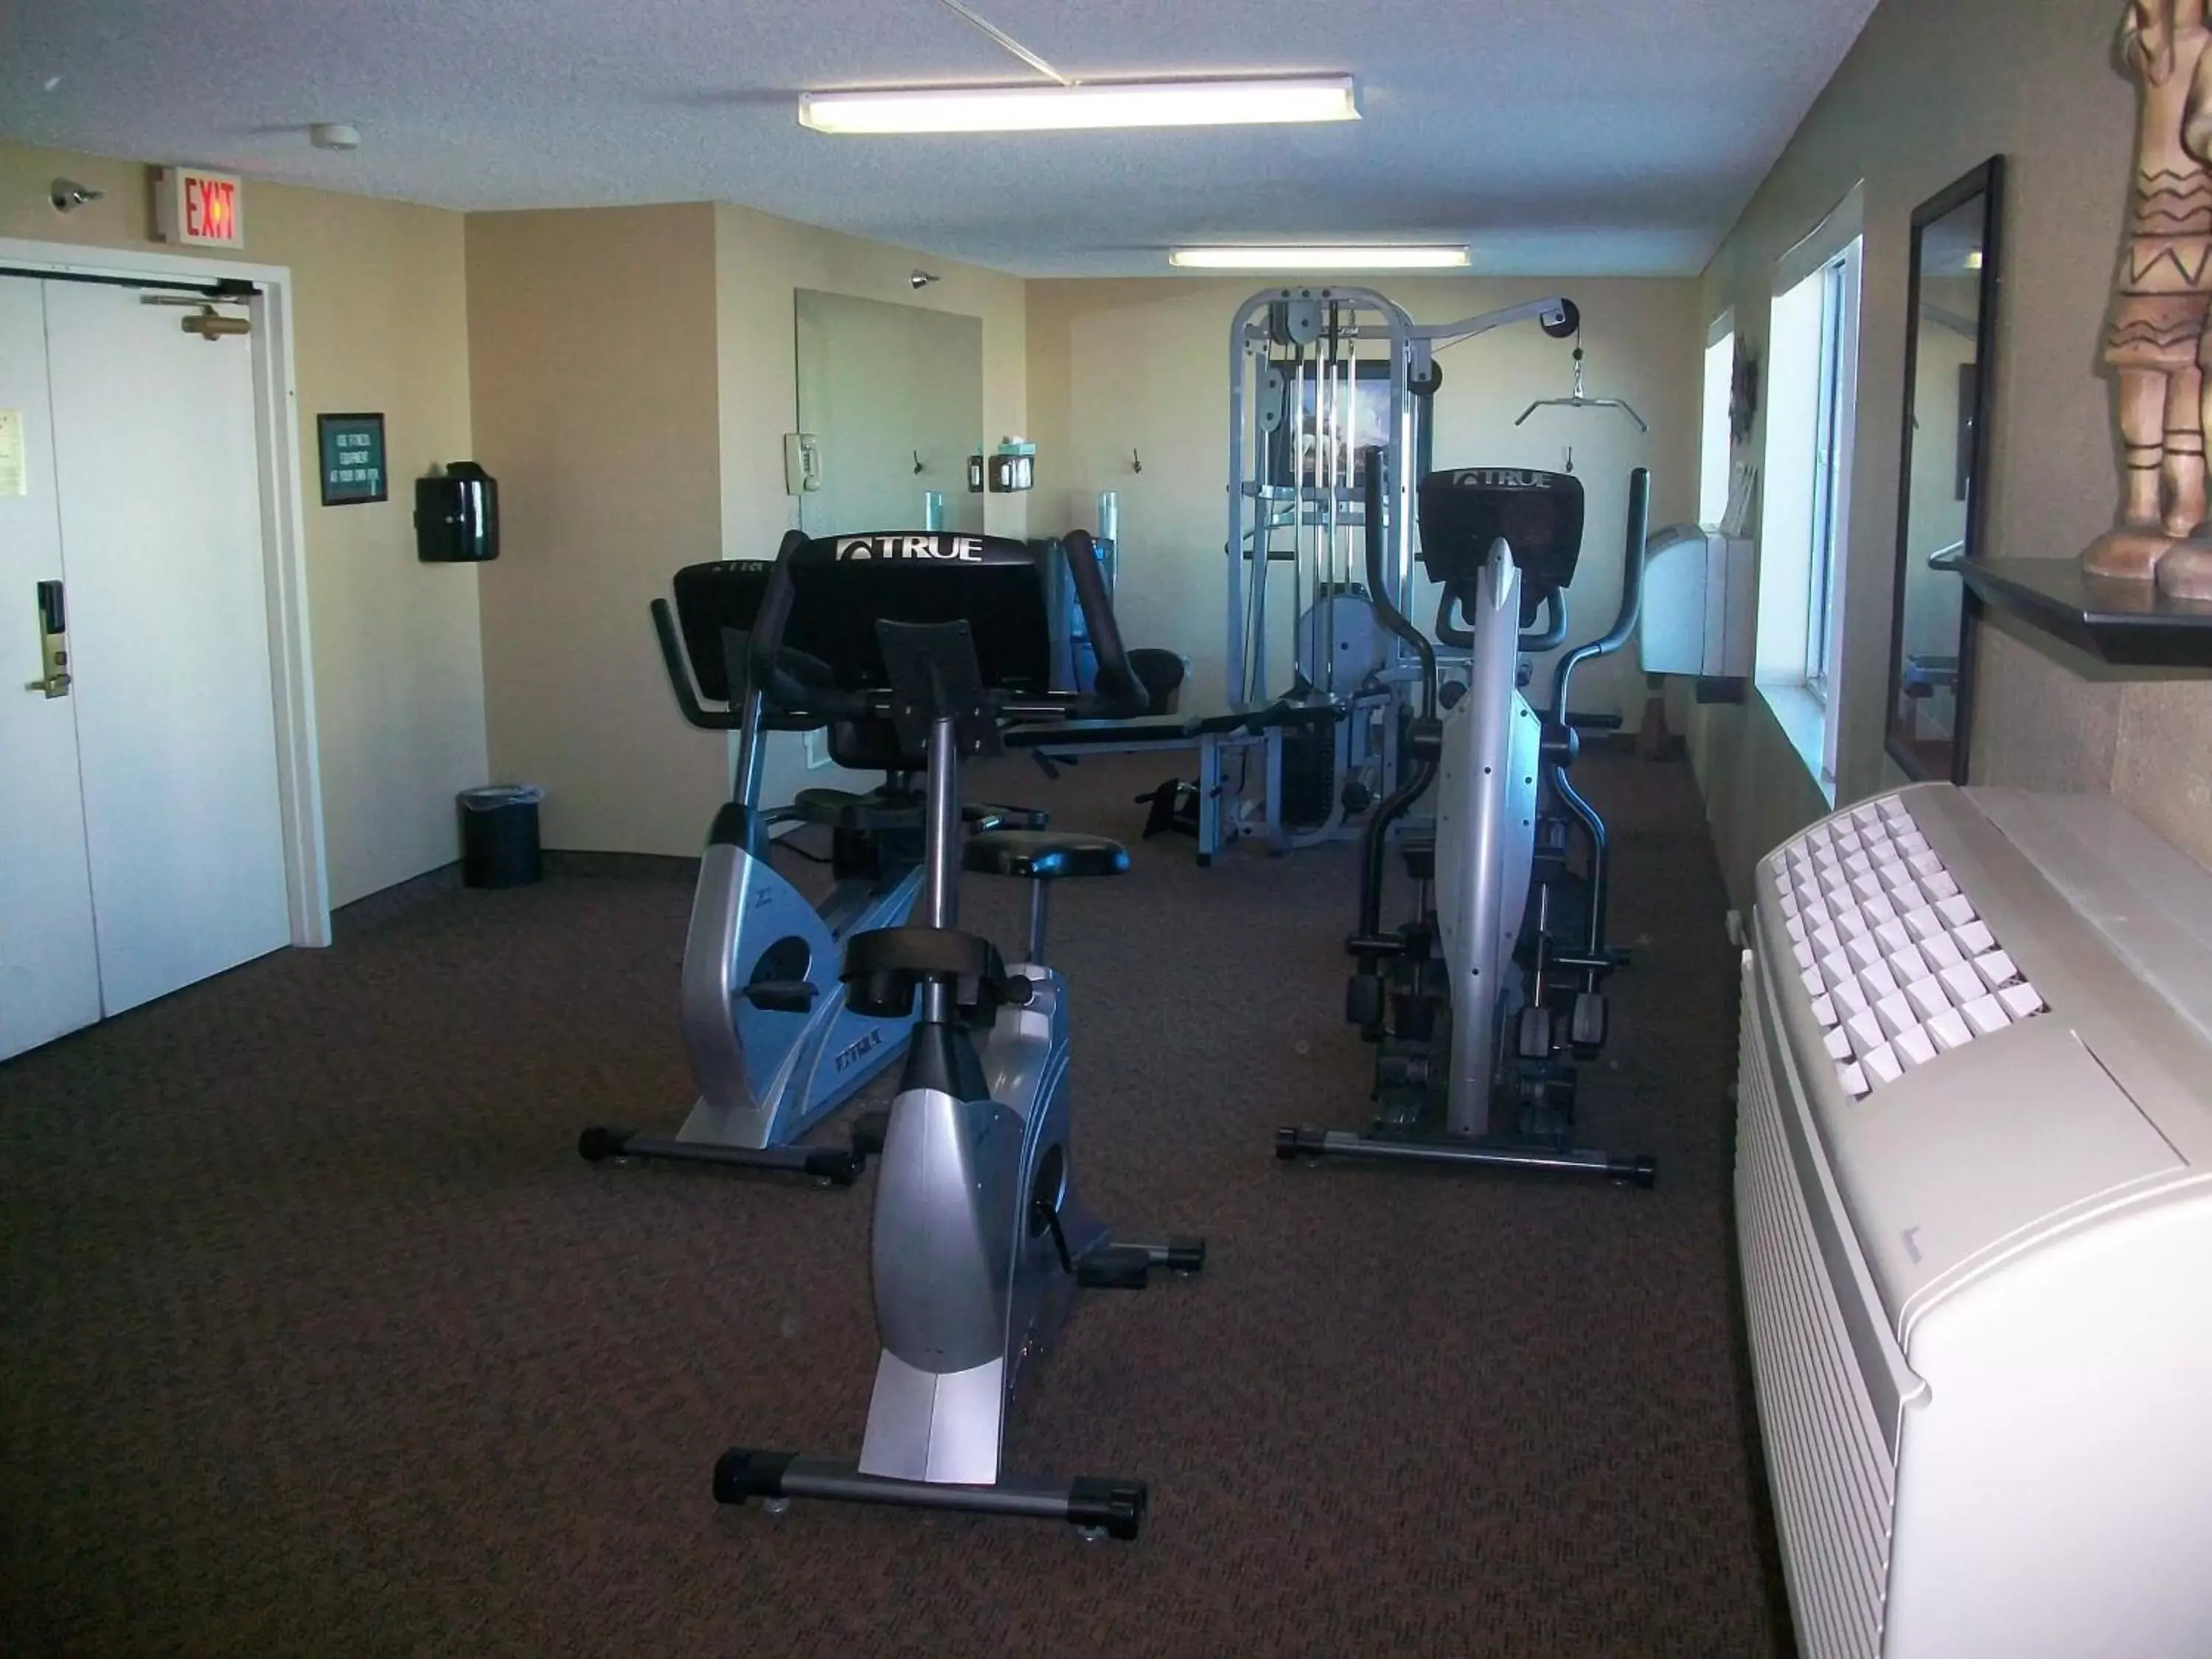 Fitness centre/facilities, Fitness Center/Facilities in Avi Resort & Casino